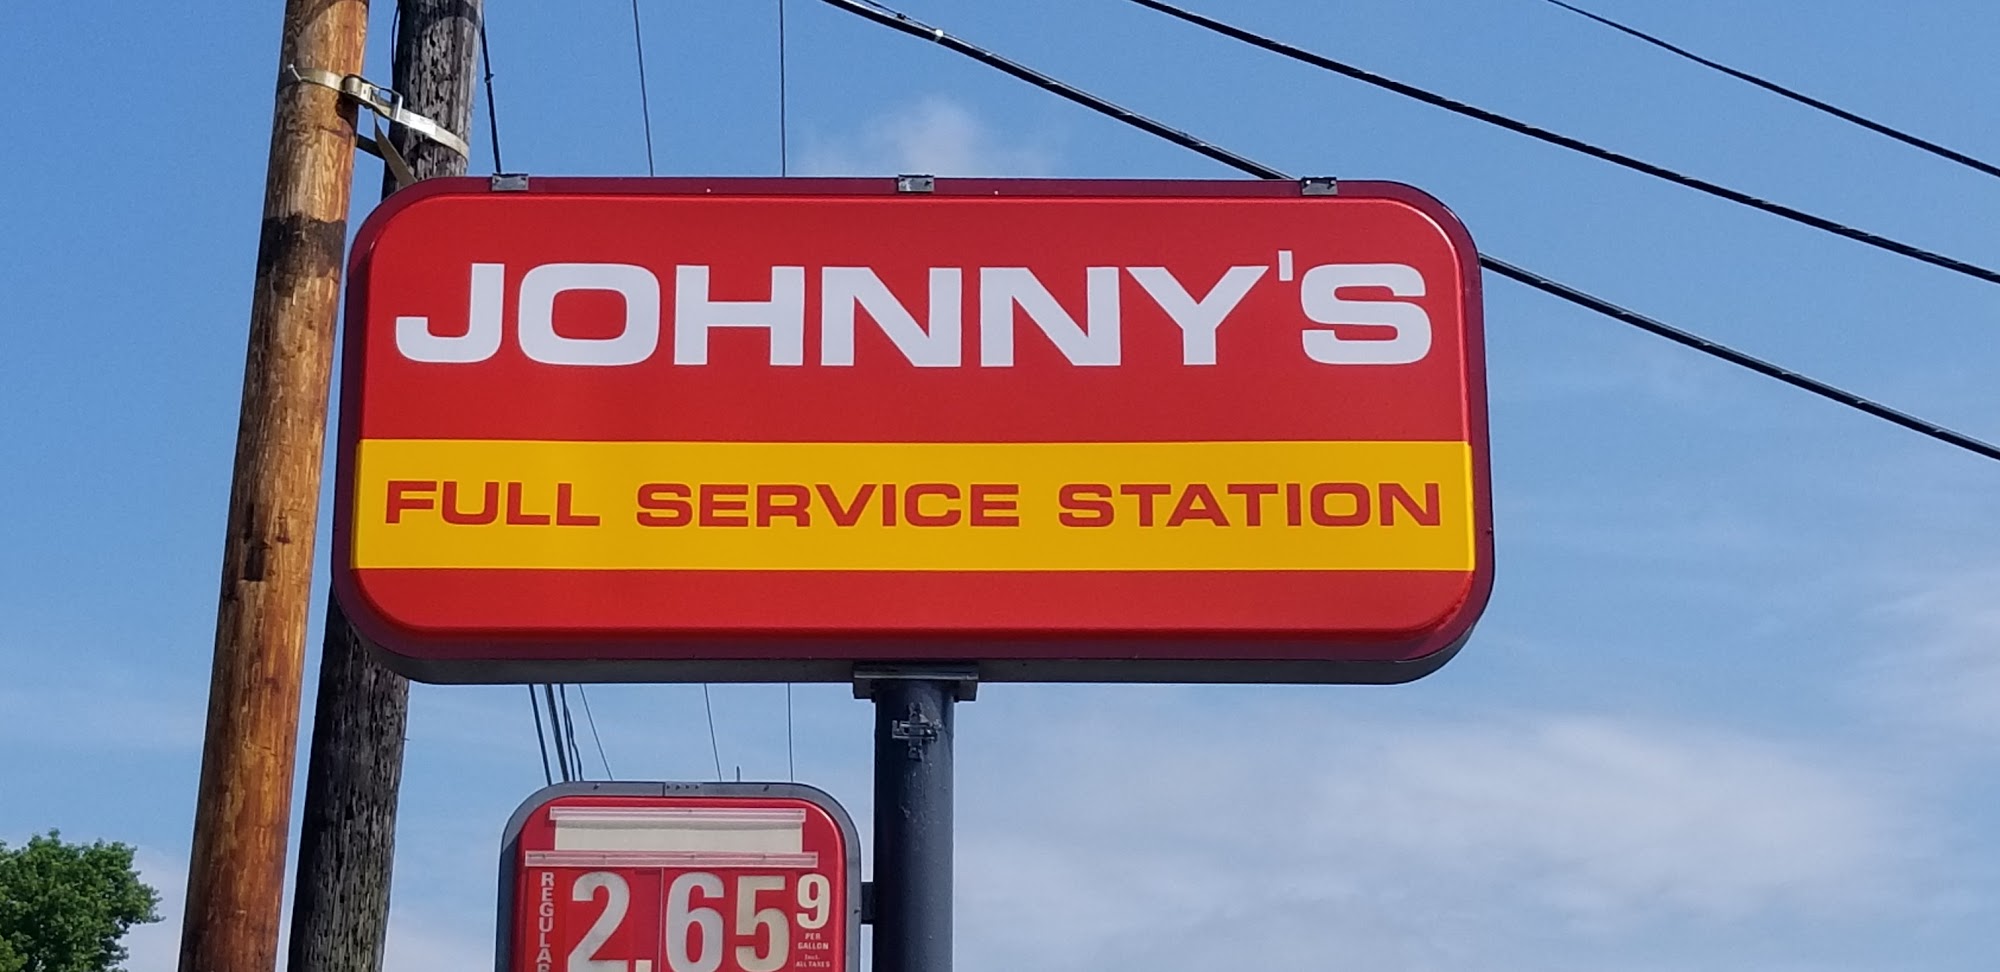 Johnny's Full Service